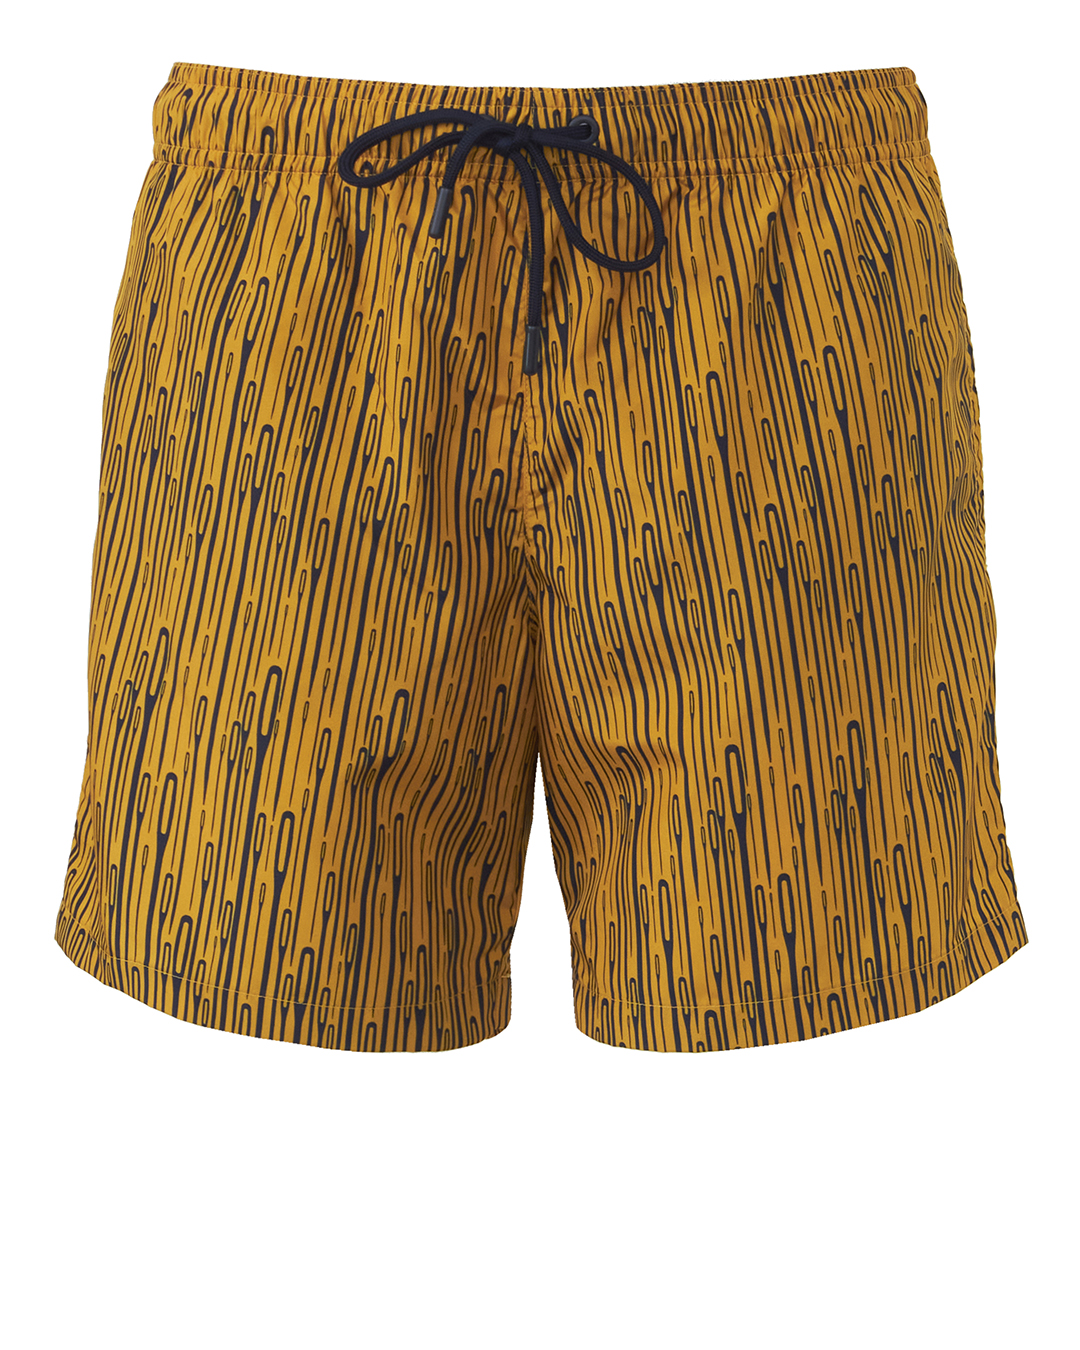 мужские пляжные шорты CRUNA мужские пляжные шорты cruna